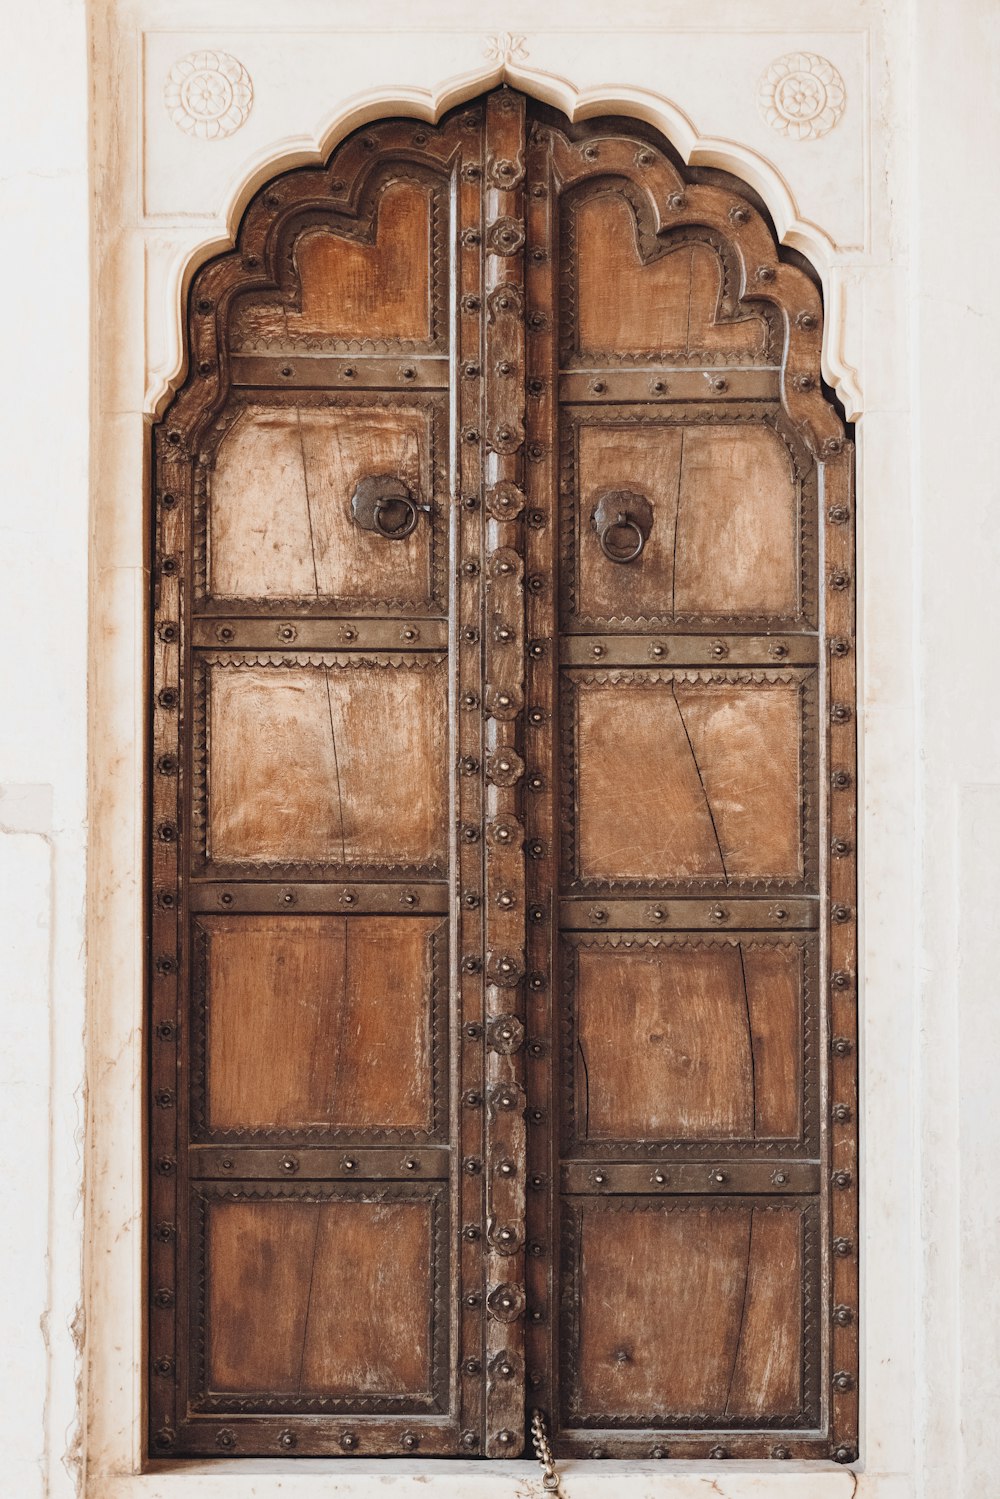 Una gran puerta de madera con intrincadas tallas en ella